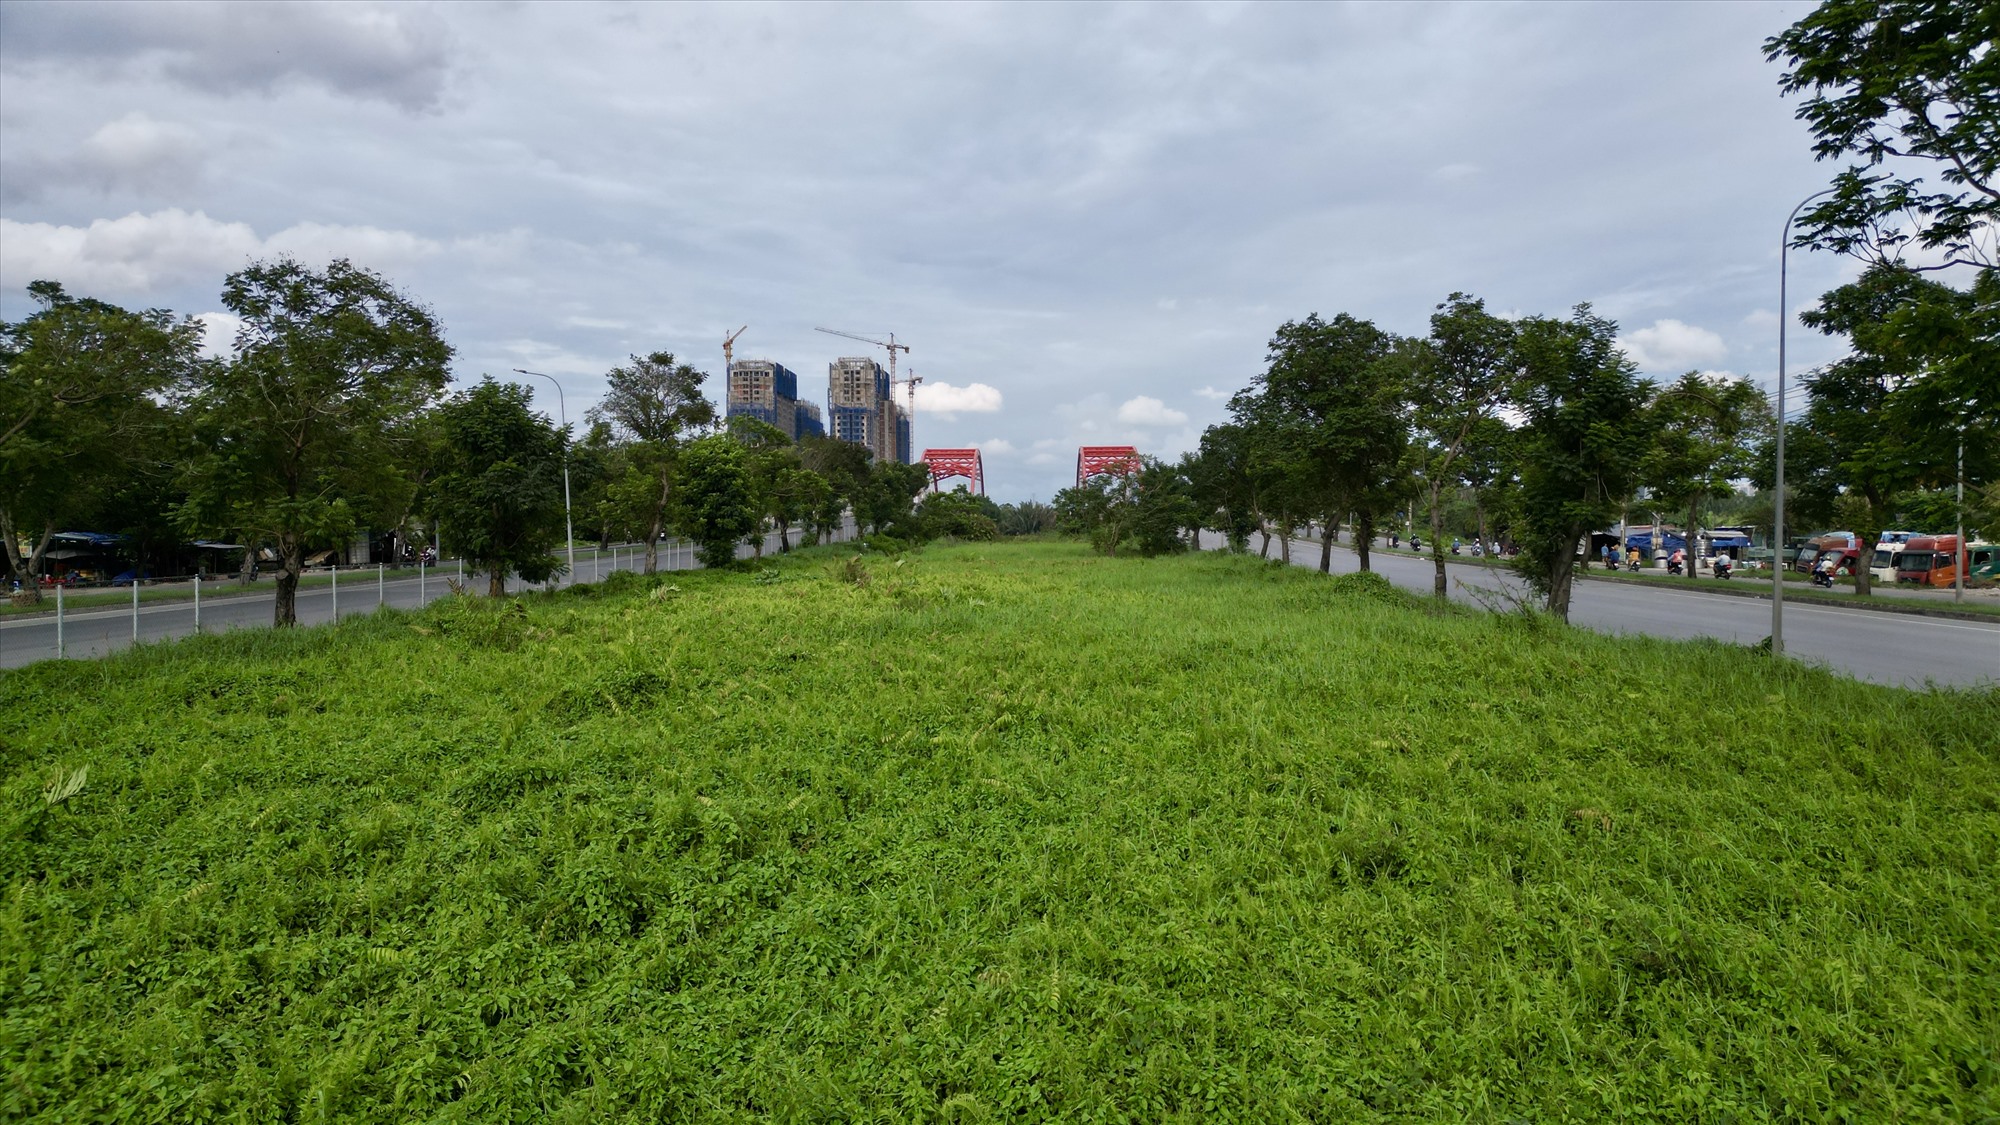 Ông cũng cho biết huyện sẽ làm việc với chủ đầu tư khu đô thị Phú Mỹ Hưng để chọn đường Nguyễn Văn Linh làm đường điểm phát triển. Theo ông Nam, từng xã sẽ cử lực lượng dọn dẹp, tái hiện cây xanh, trồng hoa và cải tạo hồ trồng sen ở giữa tuyến đường này.